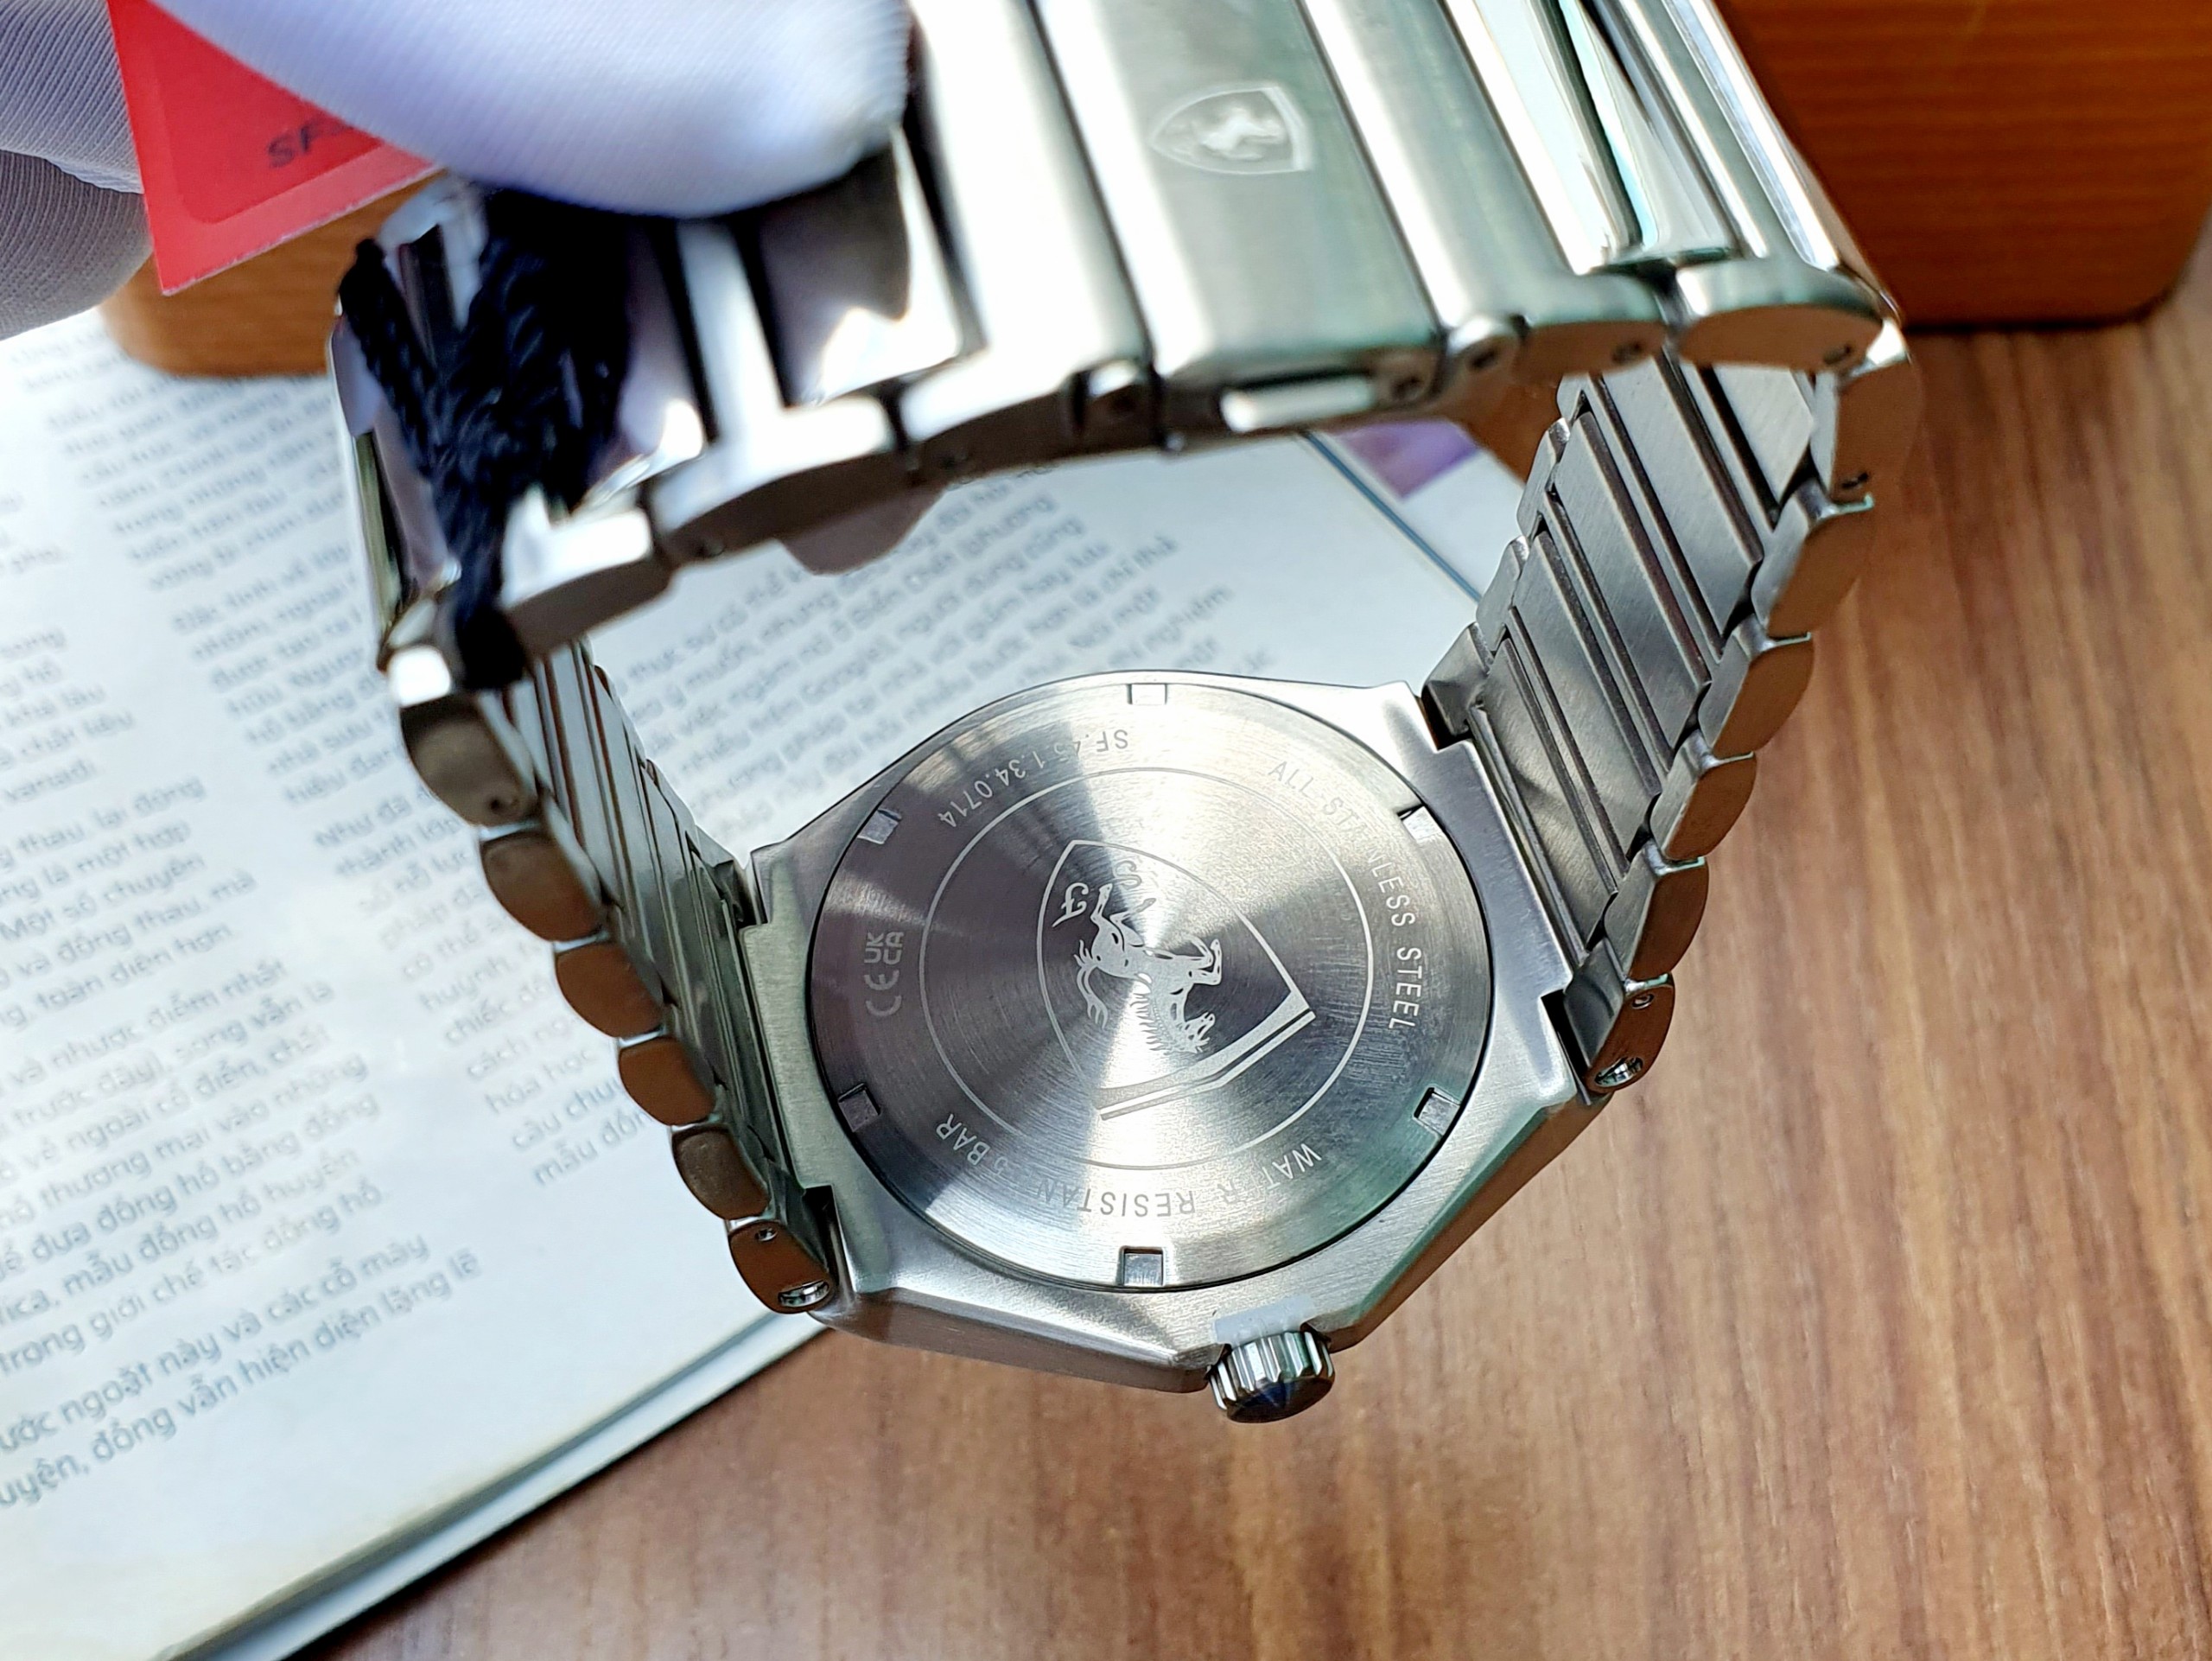 Đồng hồ Scuderia Ferrari Aspire Men's Watch siêu ngầu